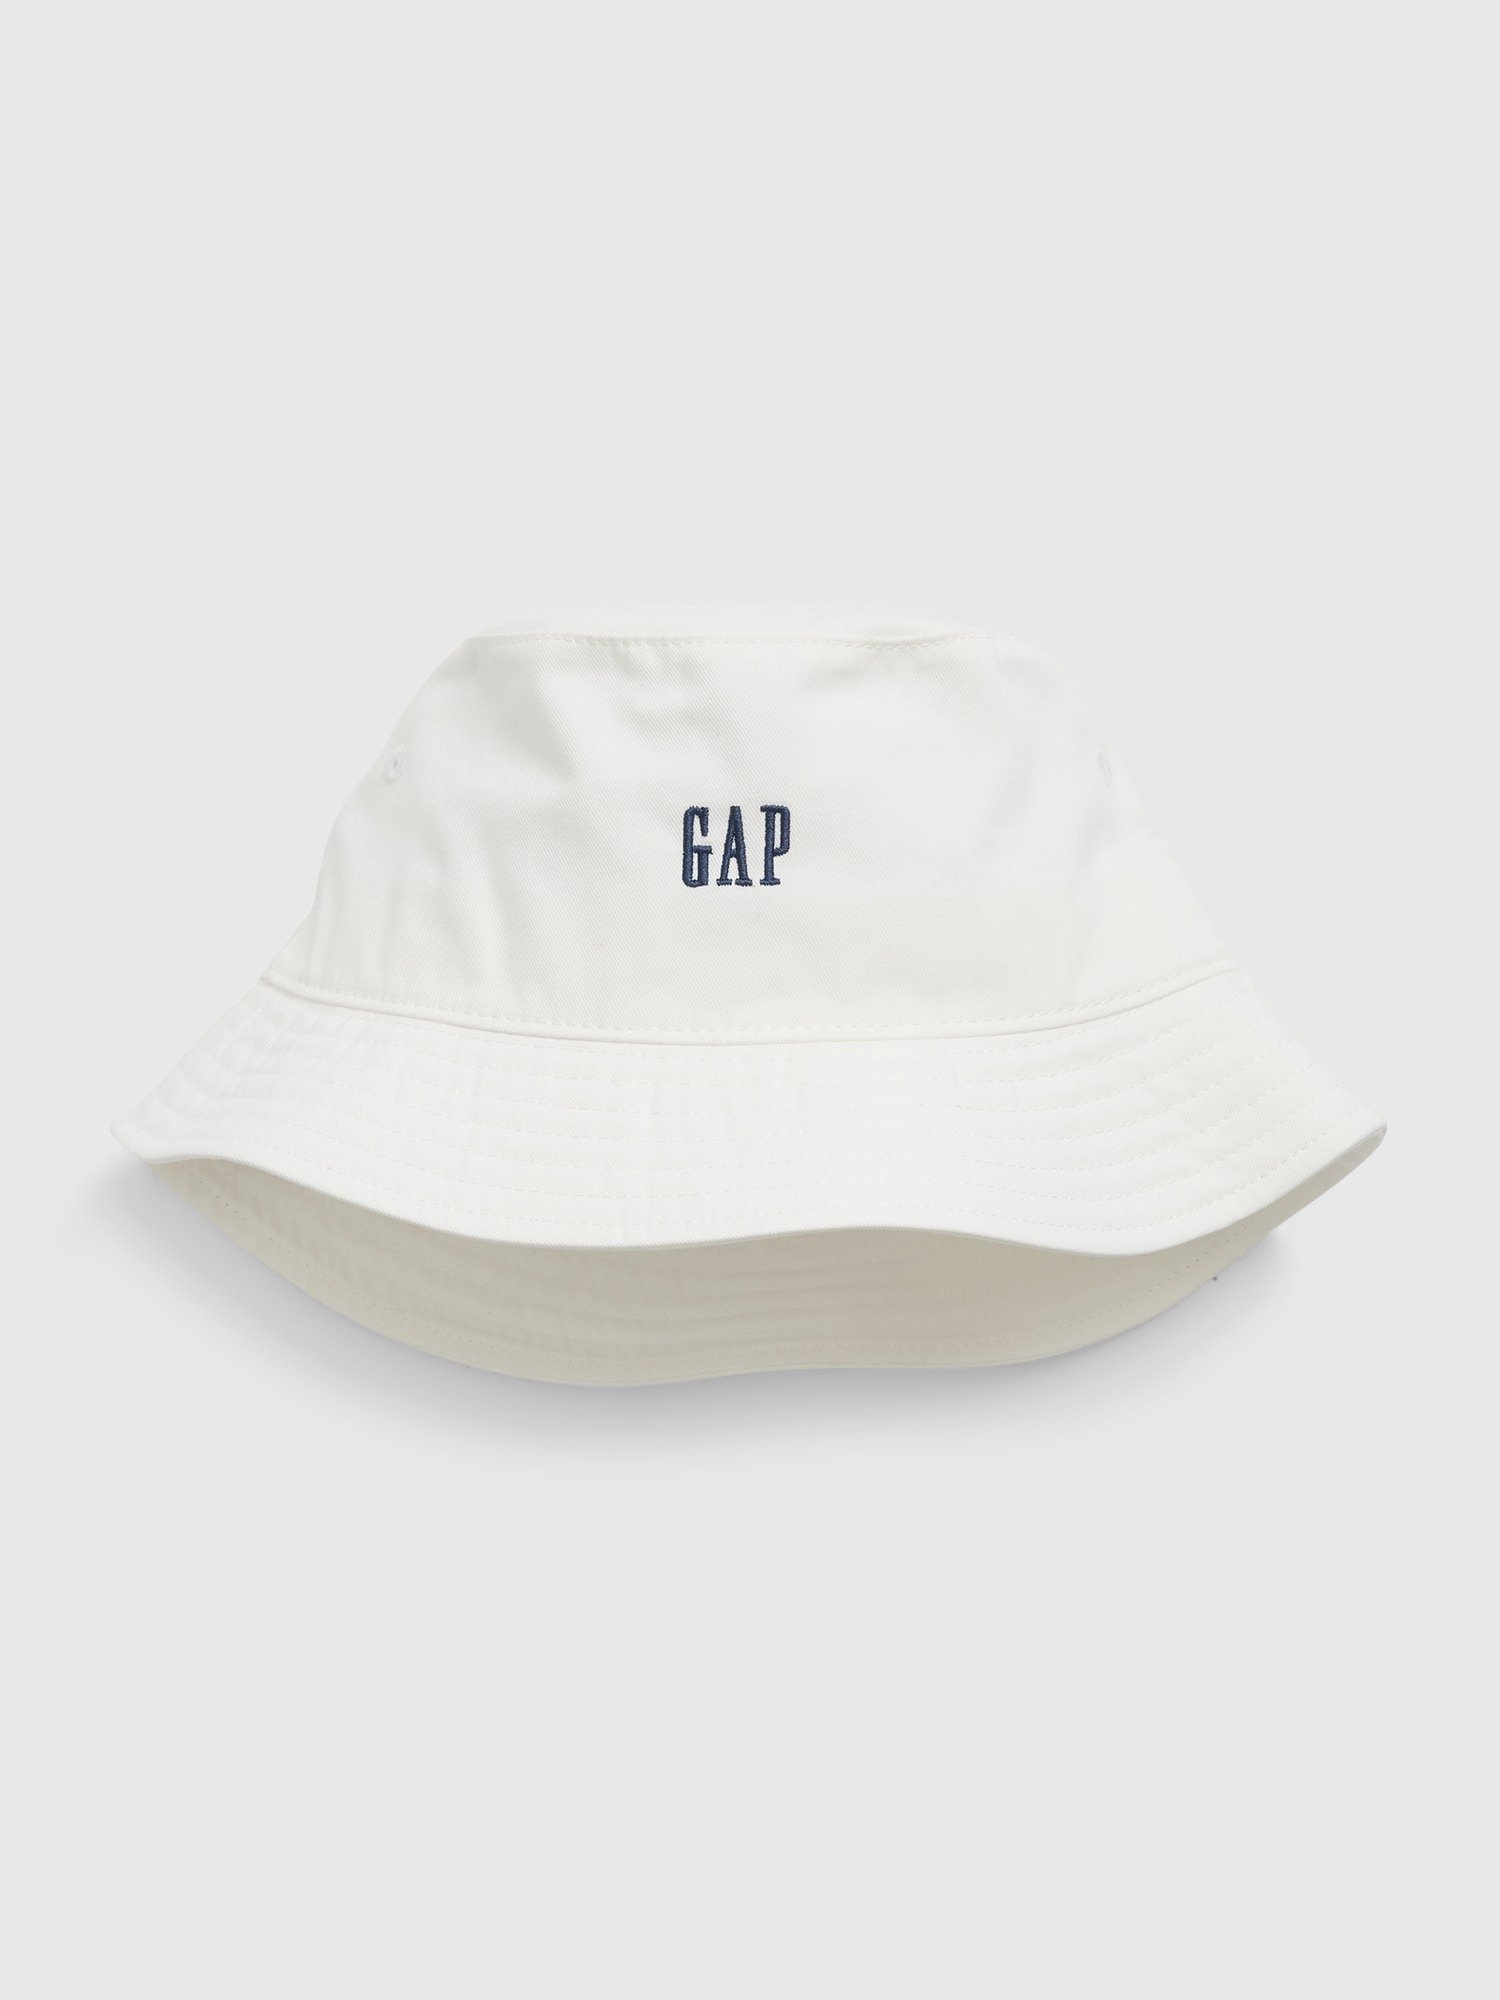 Gap Logo Balıkçı Şapka product image